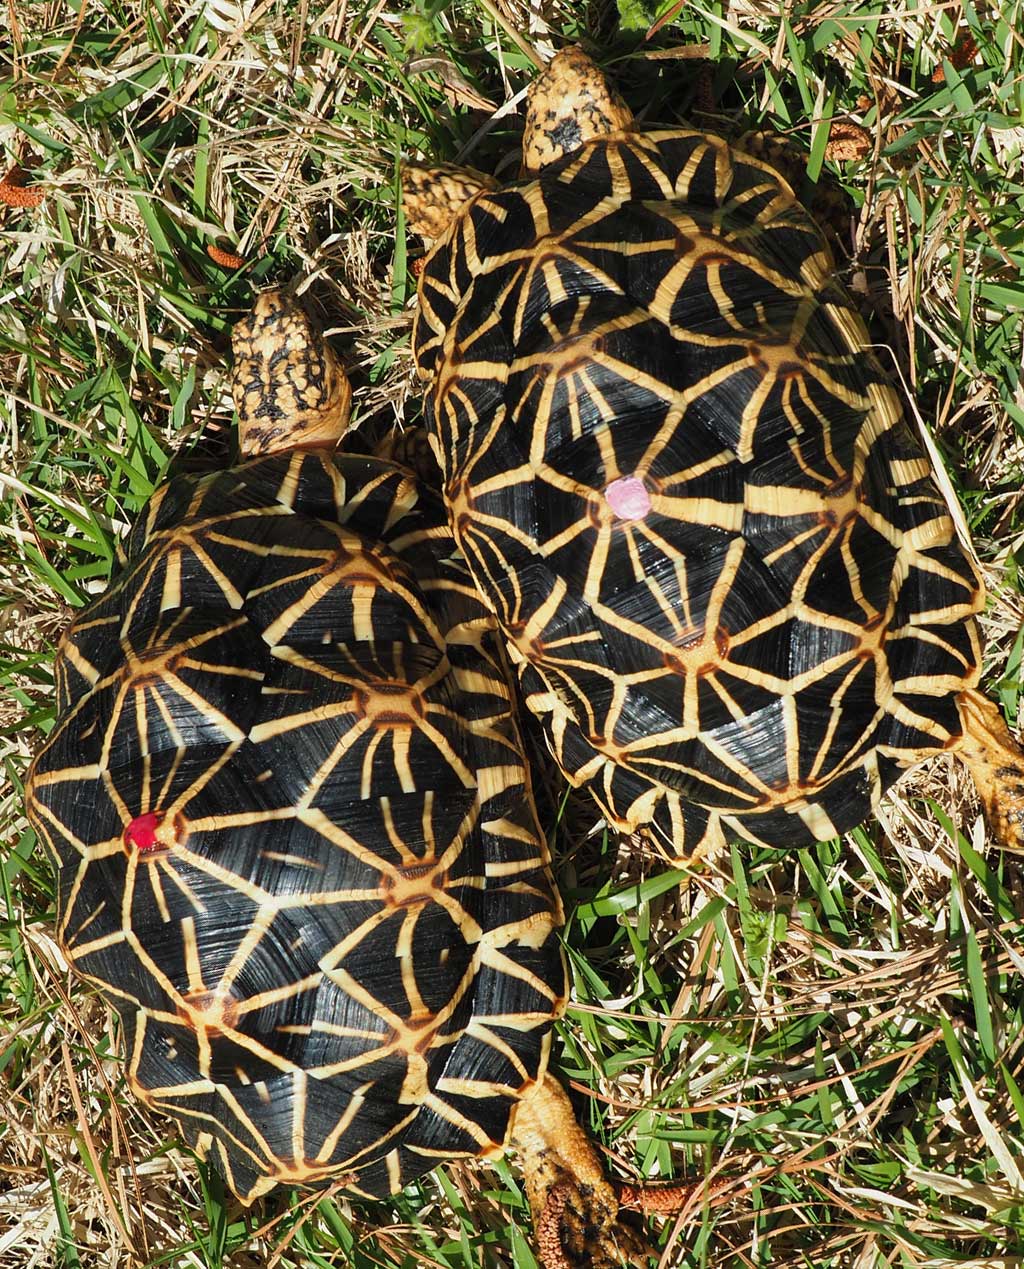 Female Sri lankan Star Tortoises